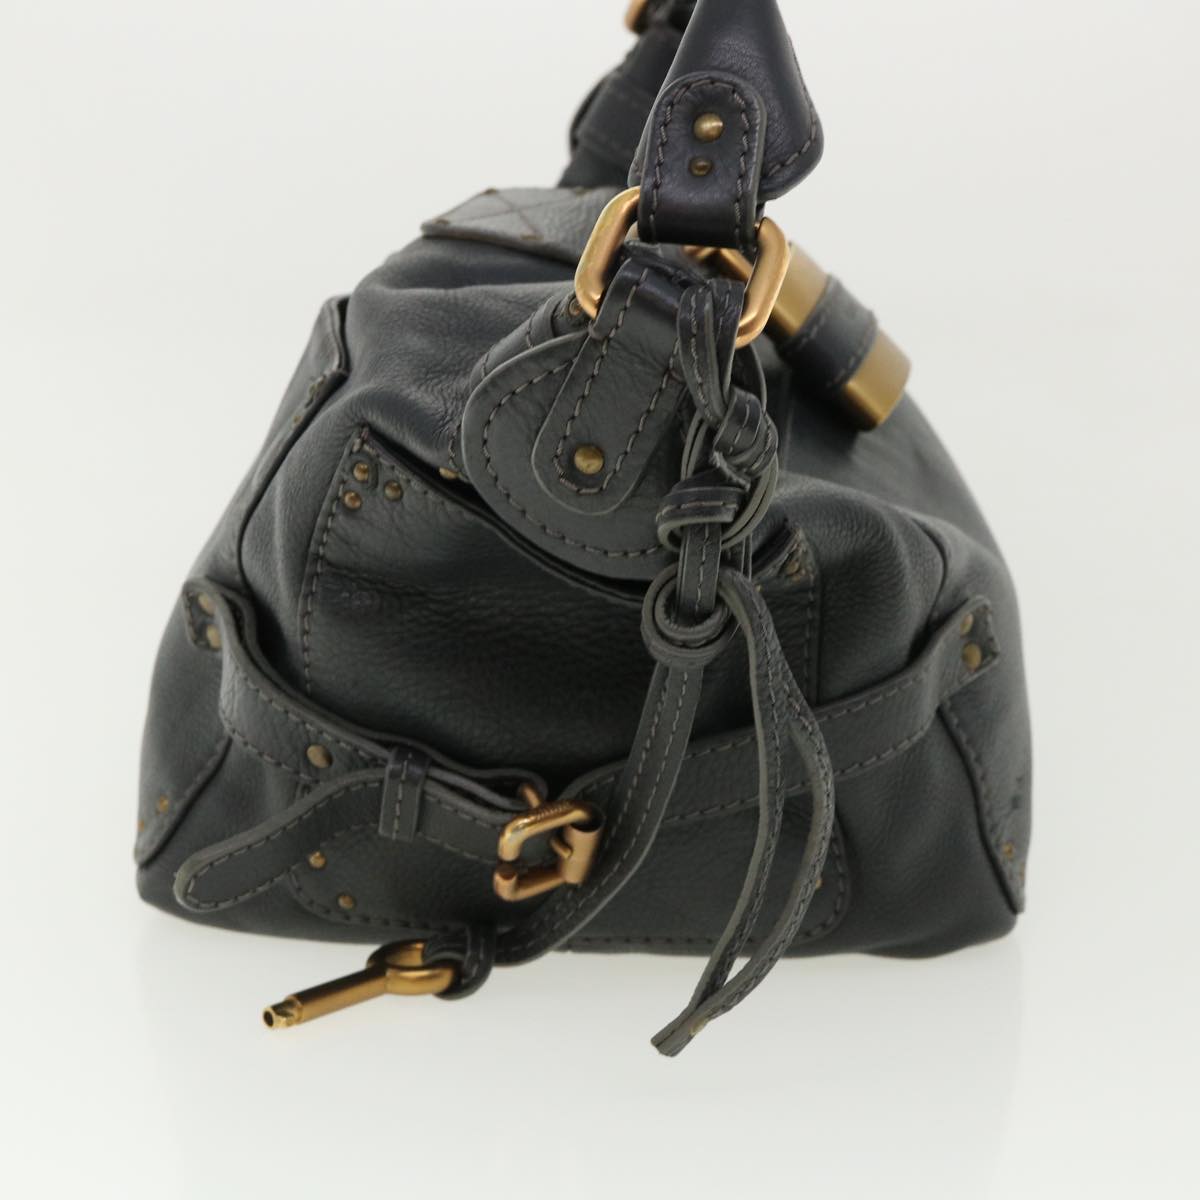 Chloe Paddington Hand Bag Leather Navy 01-06-53 Auth 36559